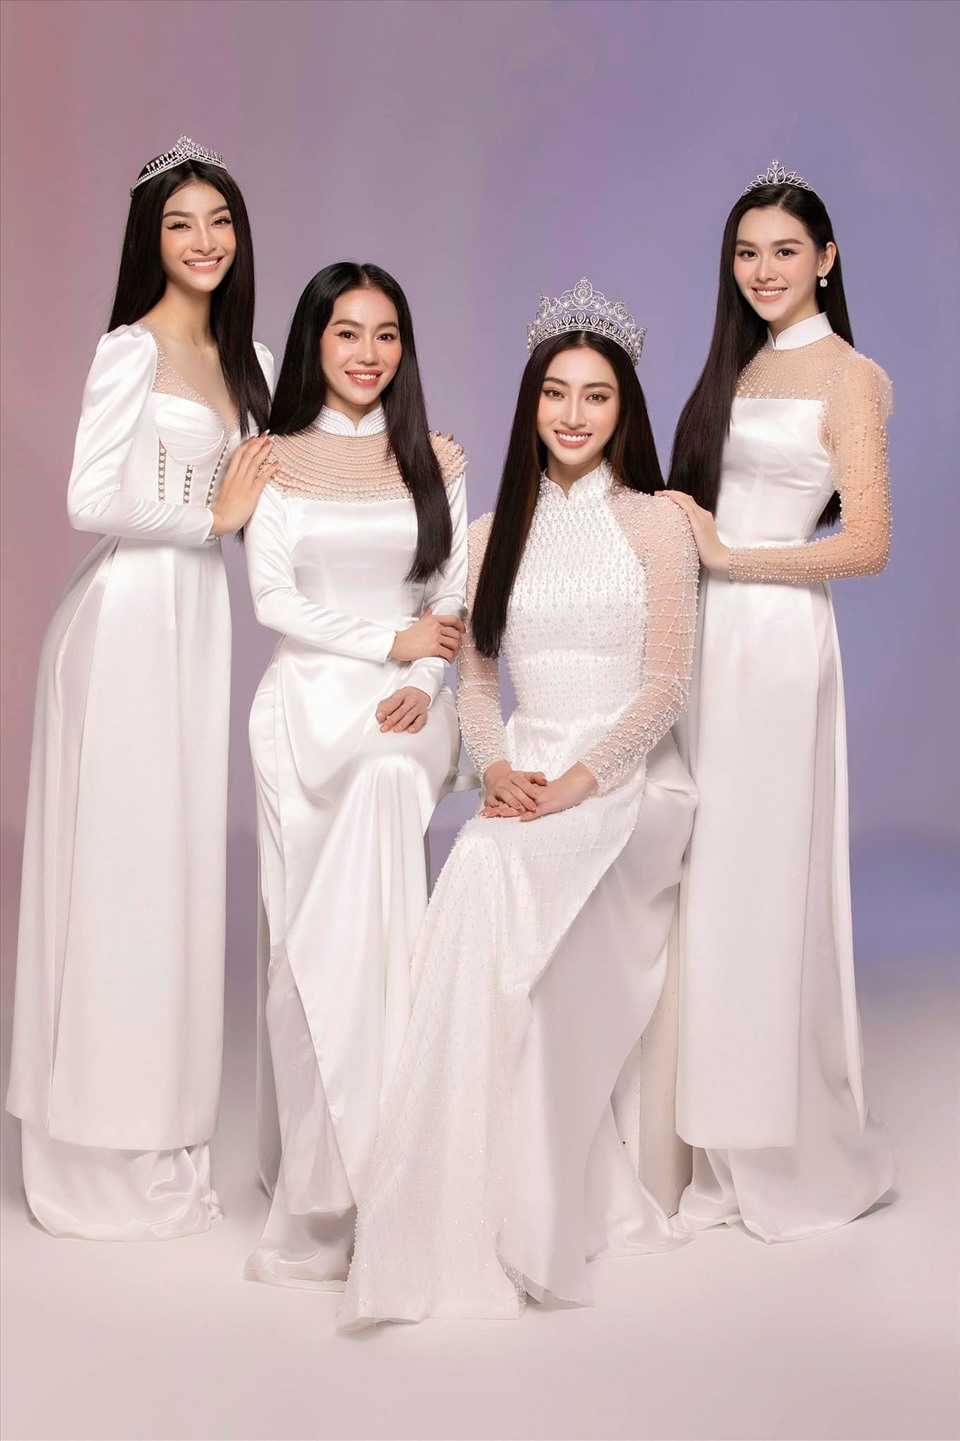 Hiện tại cả 3 người đẹp đều đang đồng hành cùng Miss World Việt Nam 2022. 3 cô gái xuất sắc nhất được gọi tên tại đêm chung kết sẽ được Hoa hậu Lương Thuỳ Linh, Á hậu Tường San và Á hậu Kiều Loan